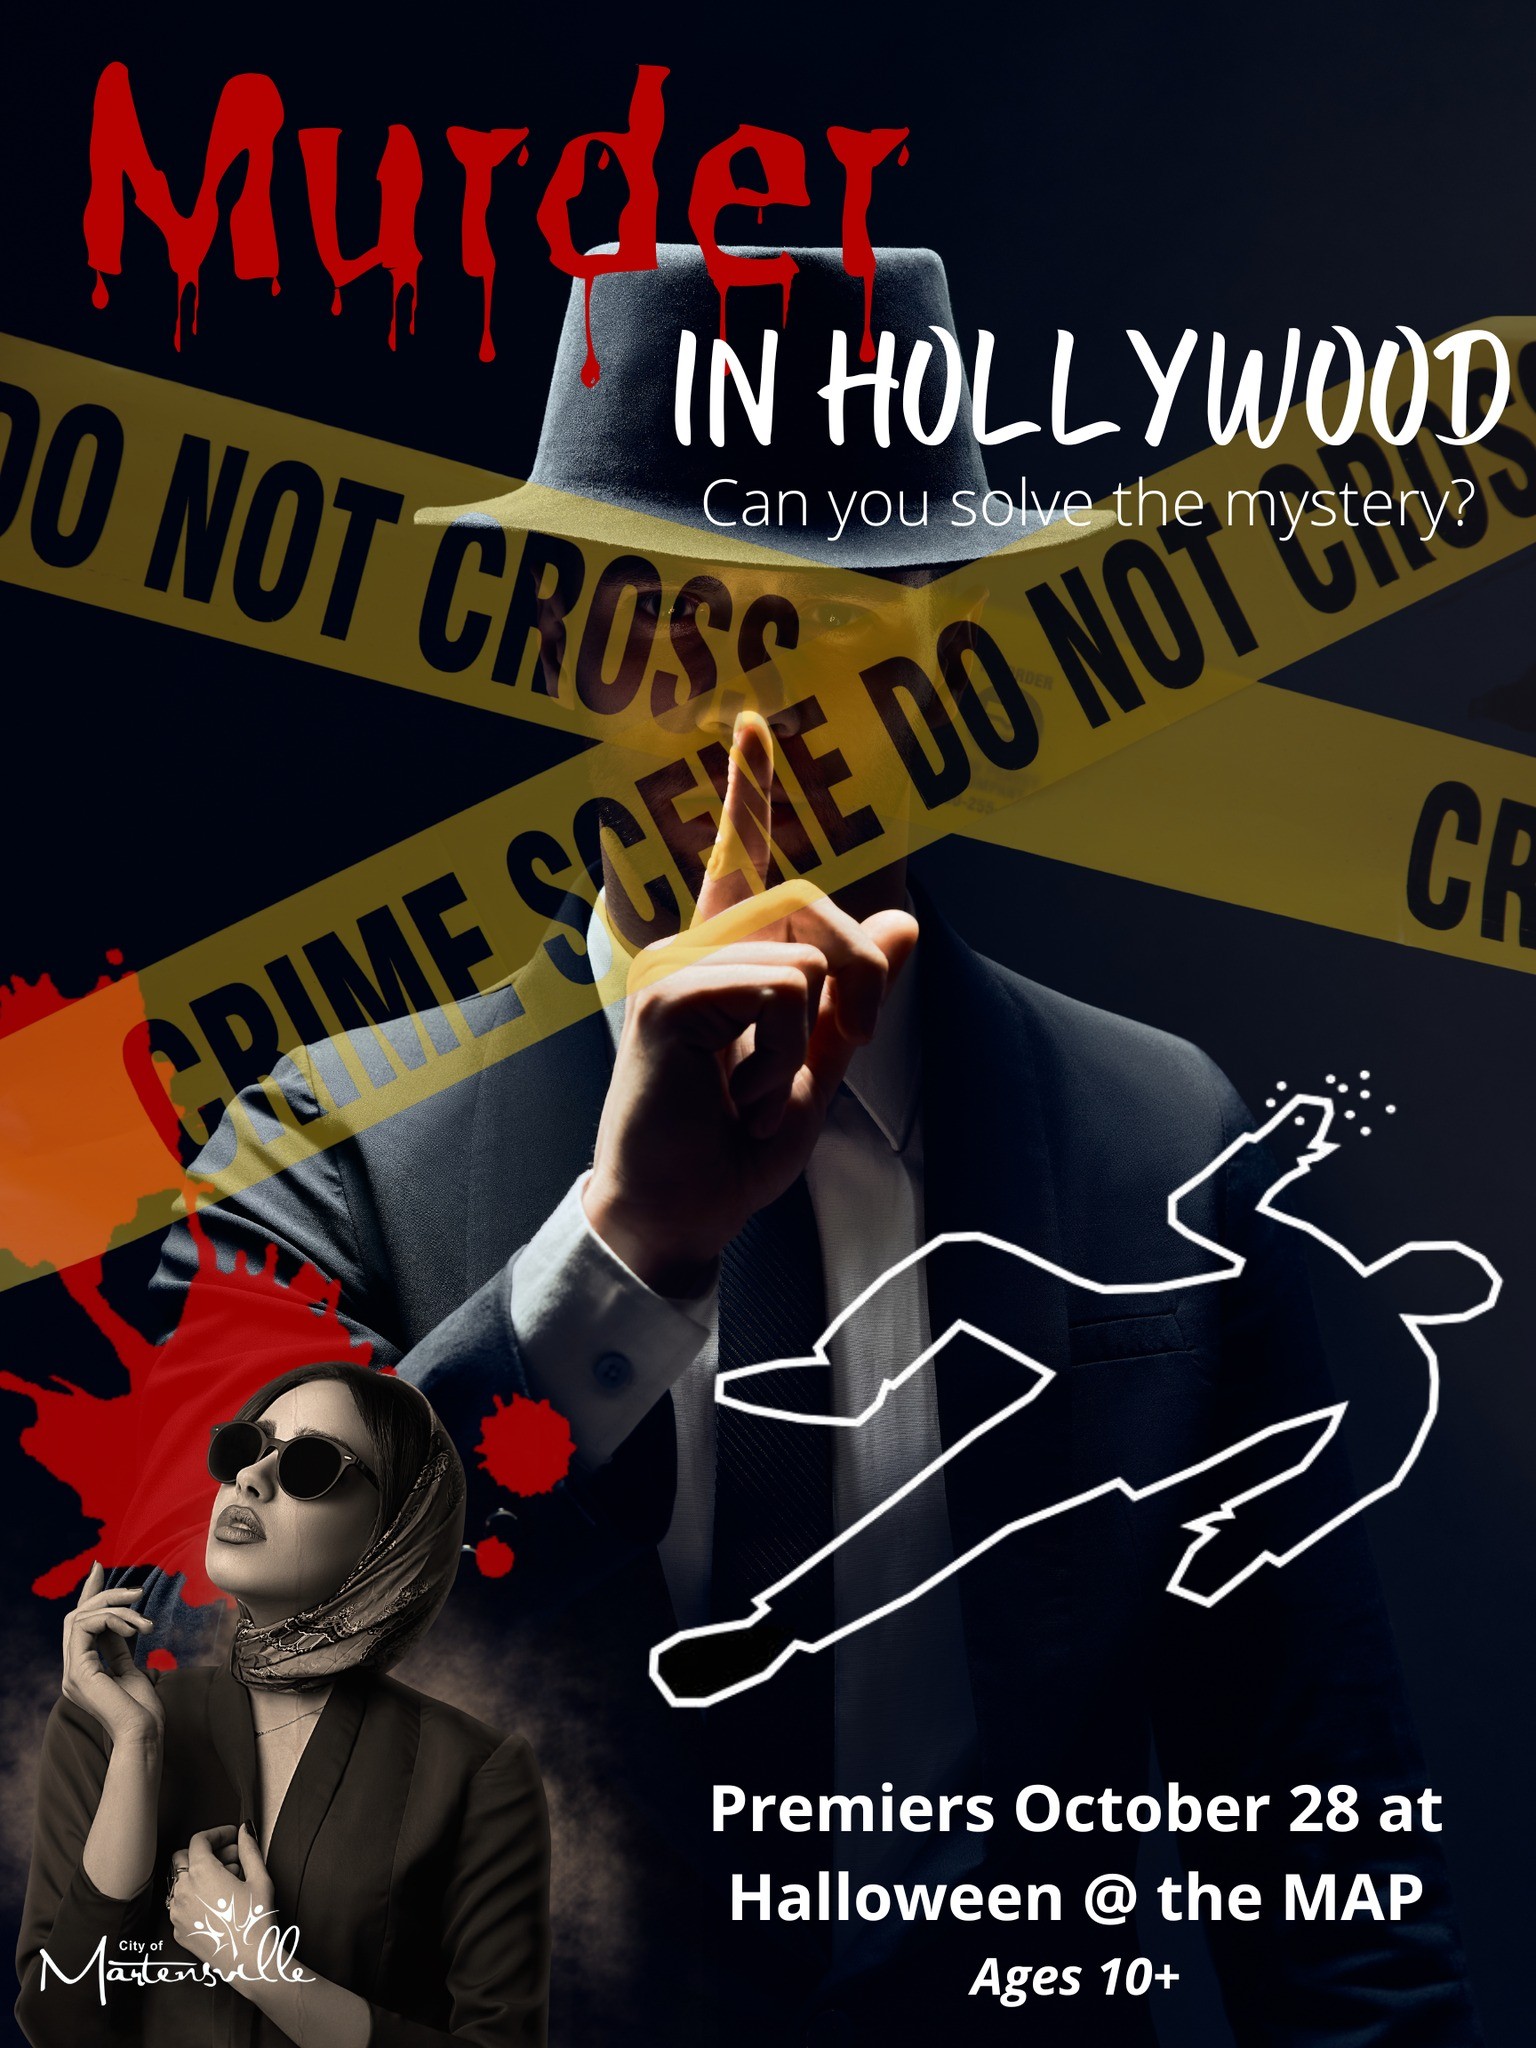 ہالی ووڈ میں قتل